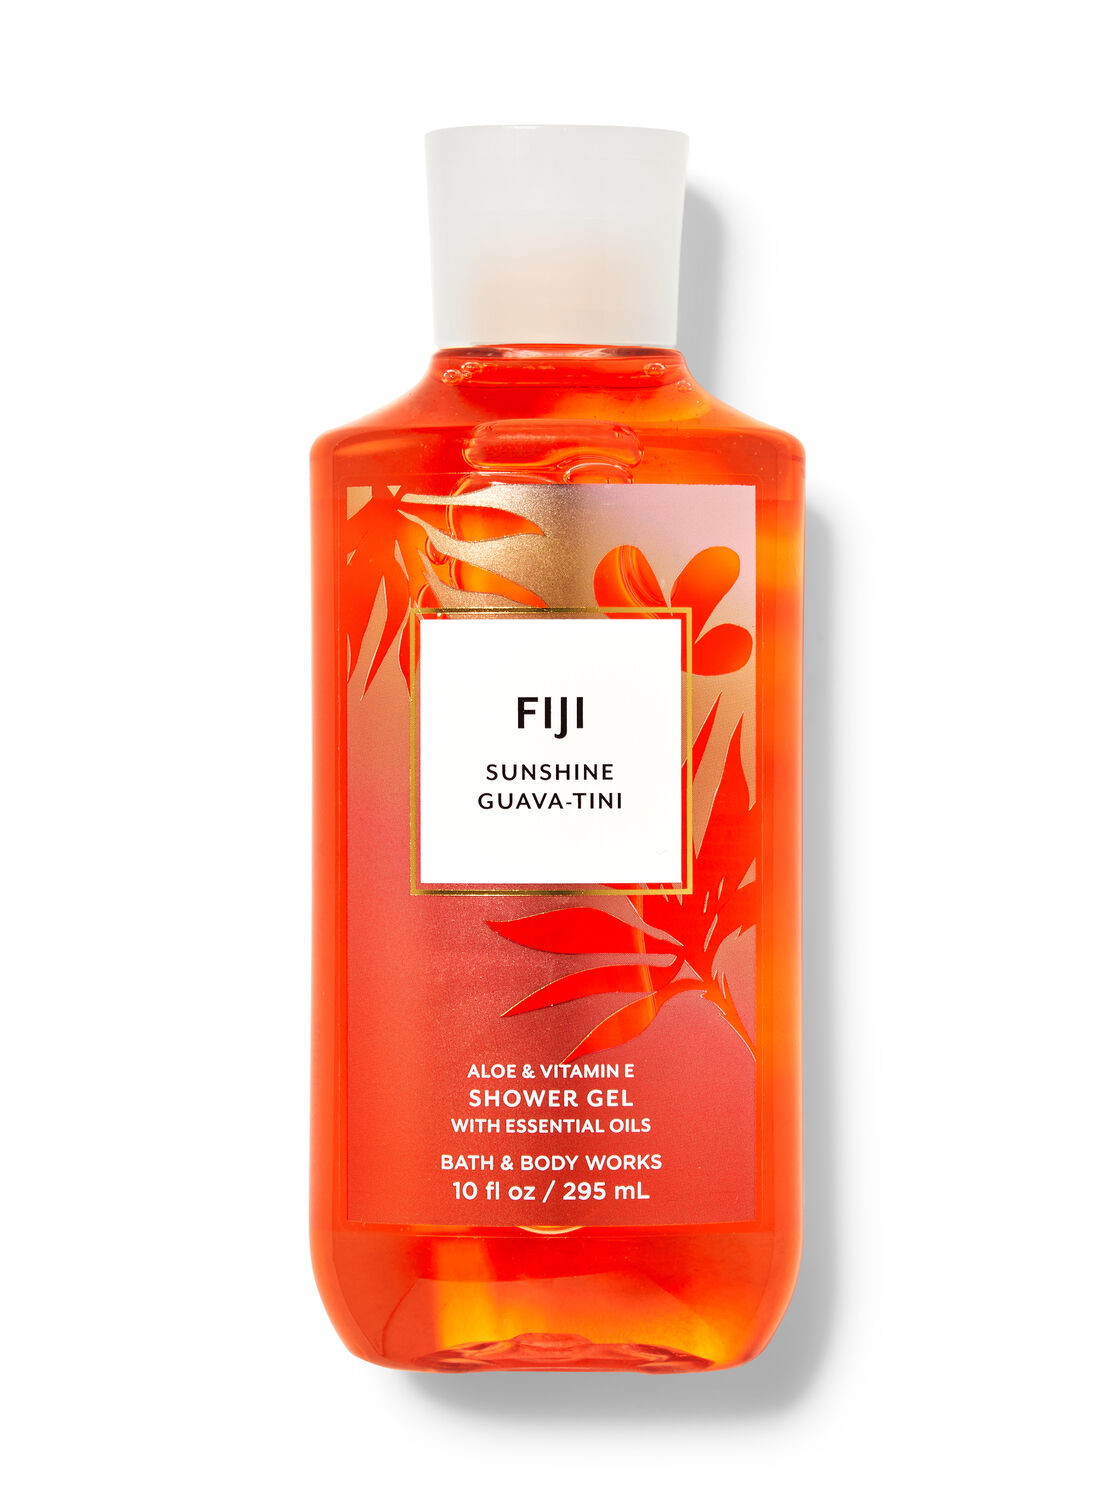 Fiji Sunshine Guava-tini Shower Gel